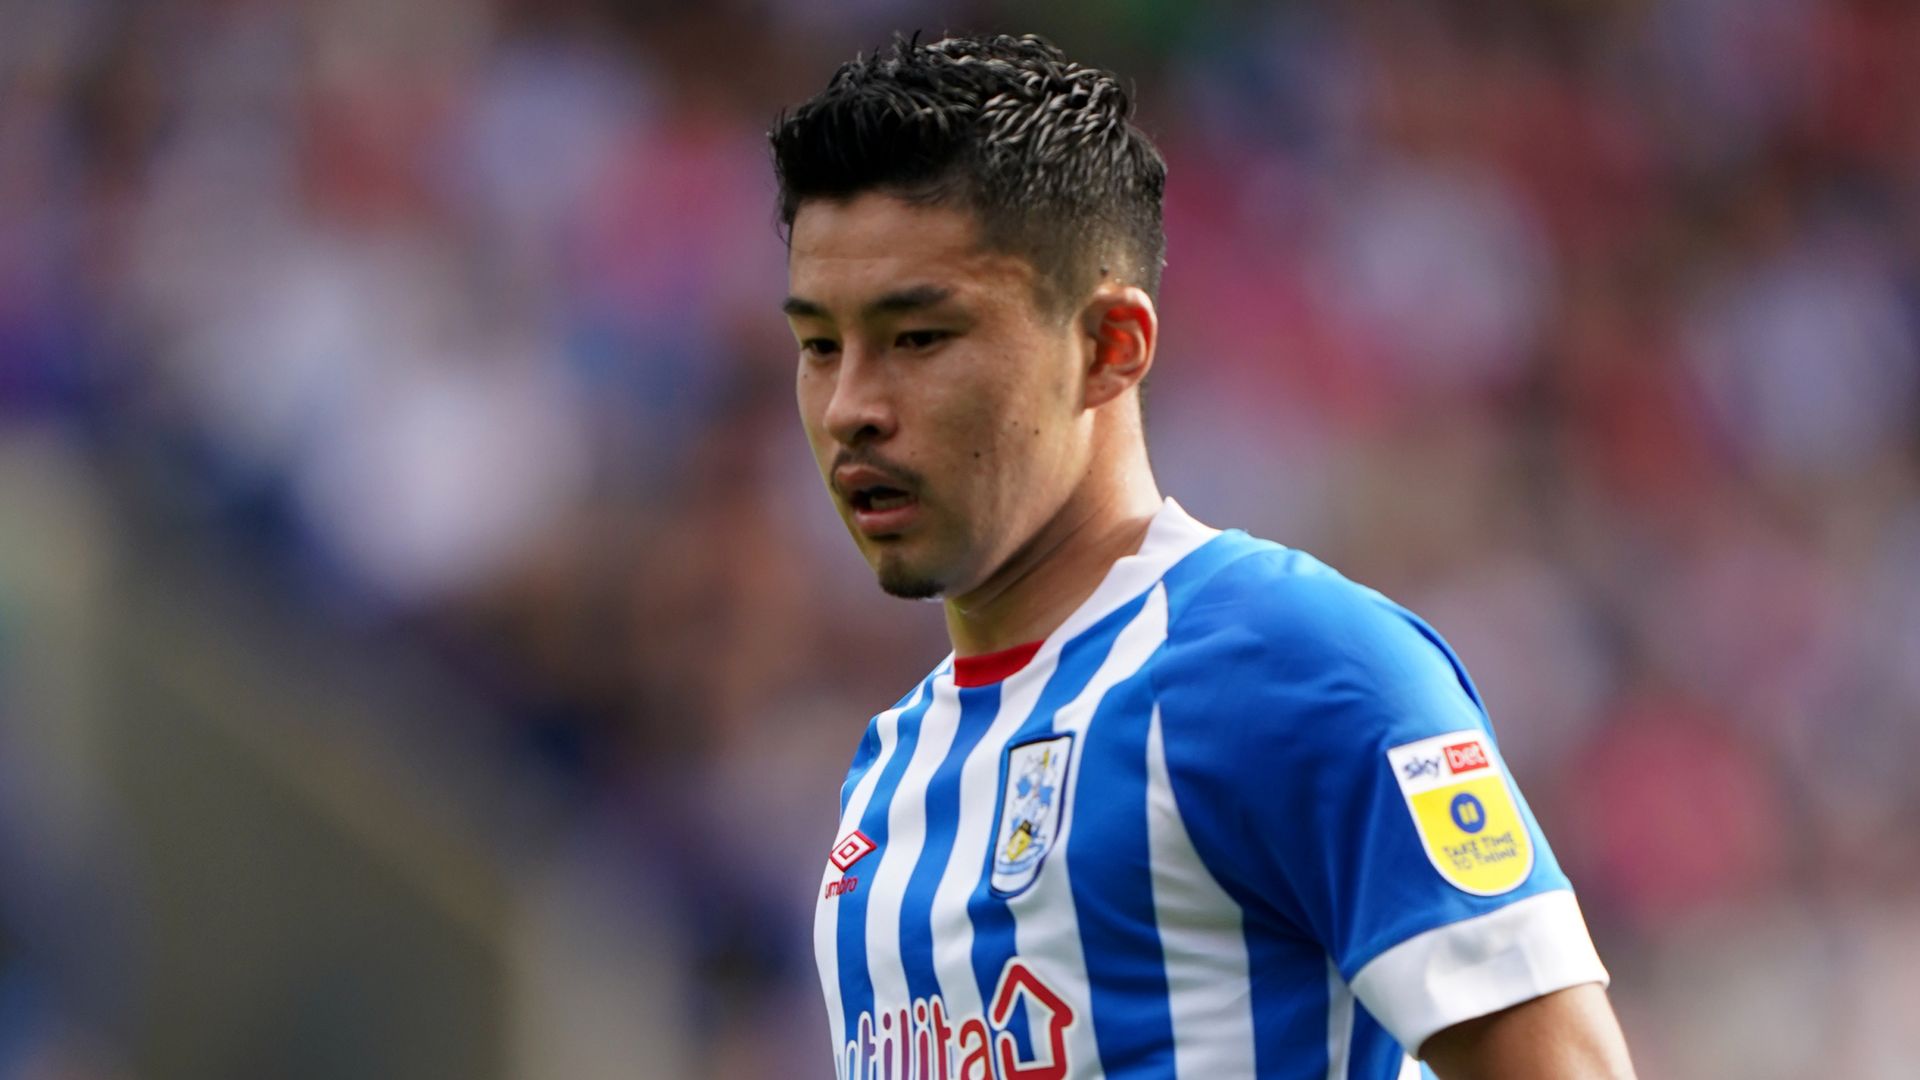 Nakayama steers Huddersfield past Millwall